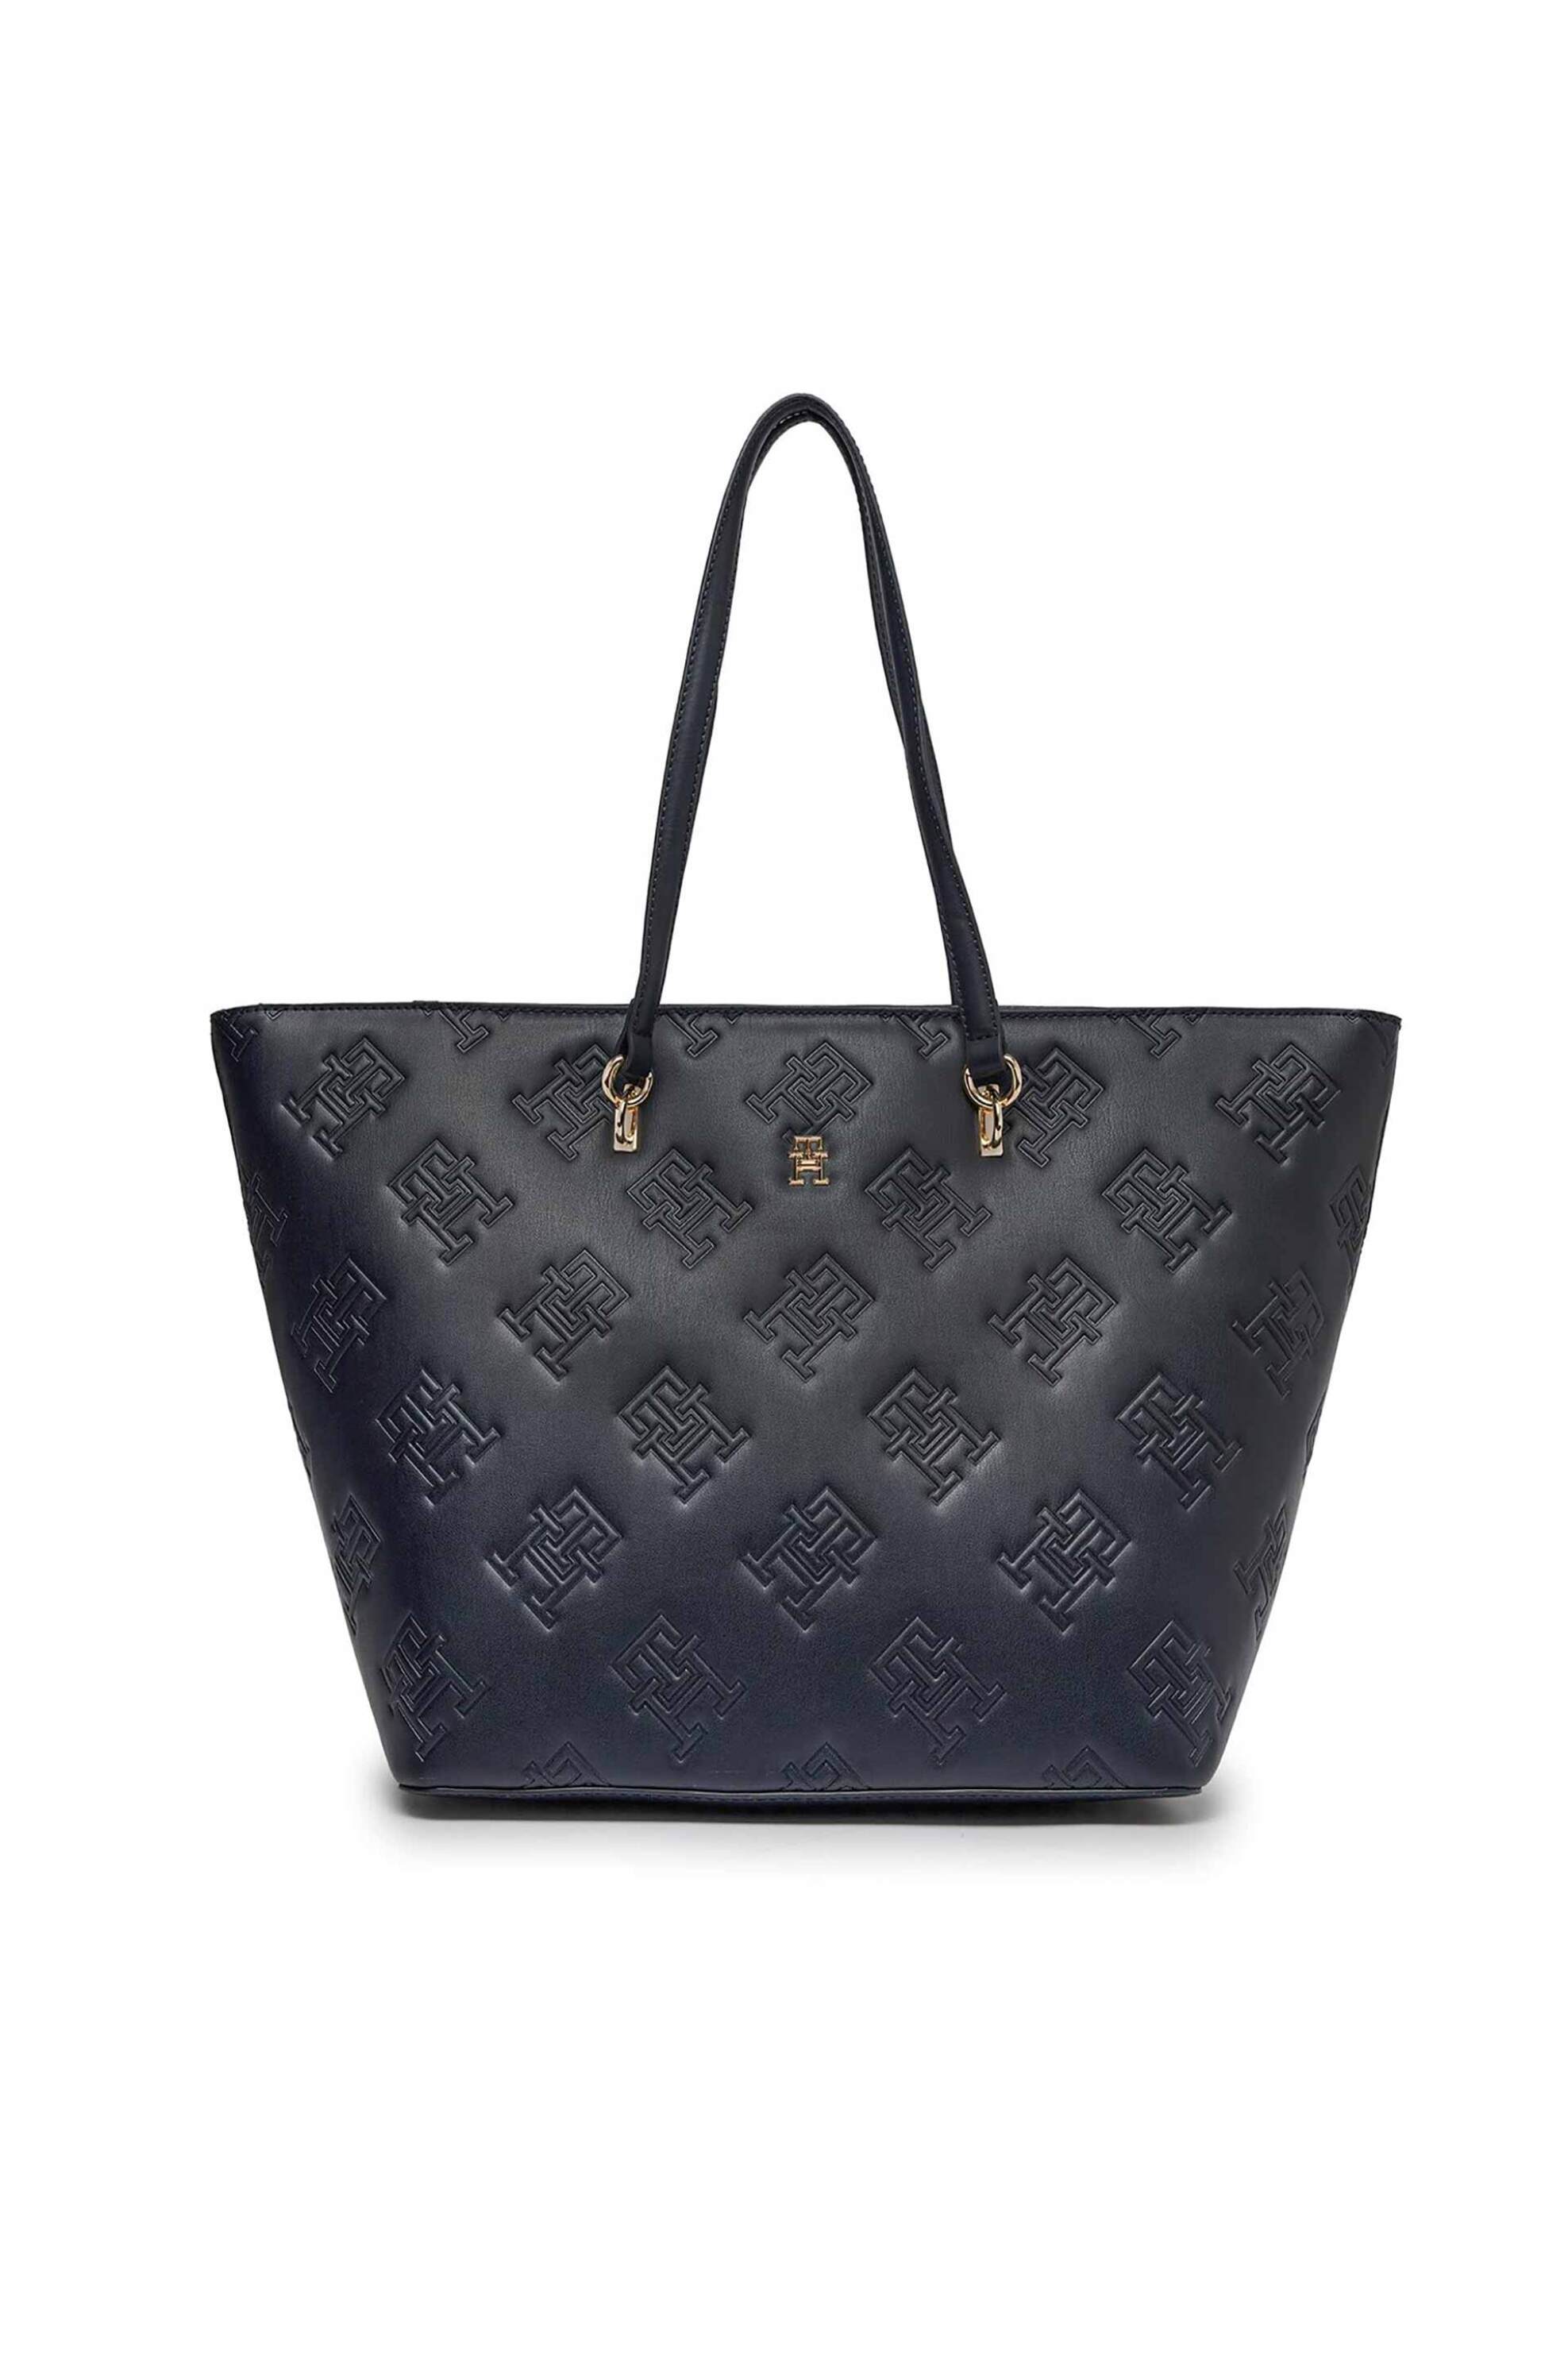 Γυναίκα > ΤΣΑΝΤΕΣ > Τσάντες Ώμου & Shopper Bags Tommy Hilfiger γυναικεία τσάντα tote faux leather με all-over ανάγλυφο monogram logo - AW0AW15726 Σκούρο Μπλε